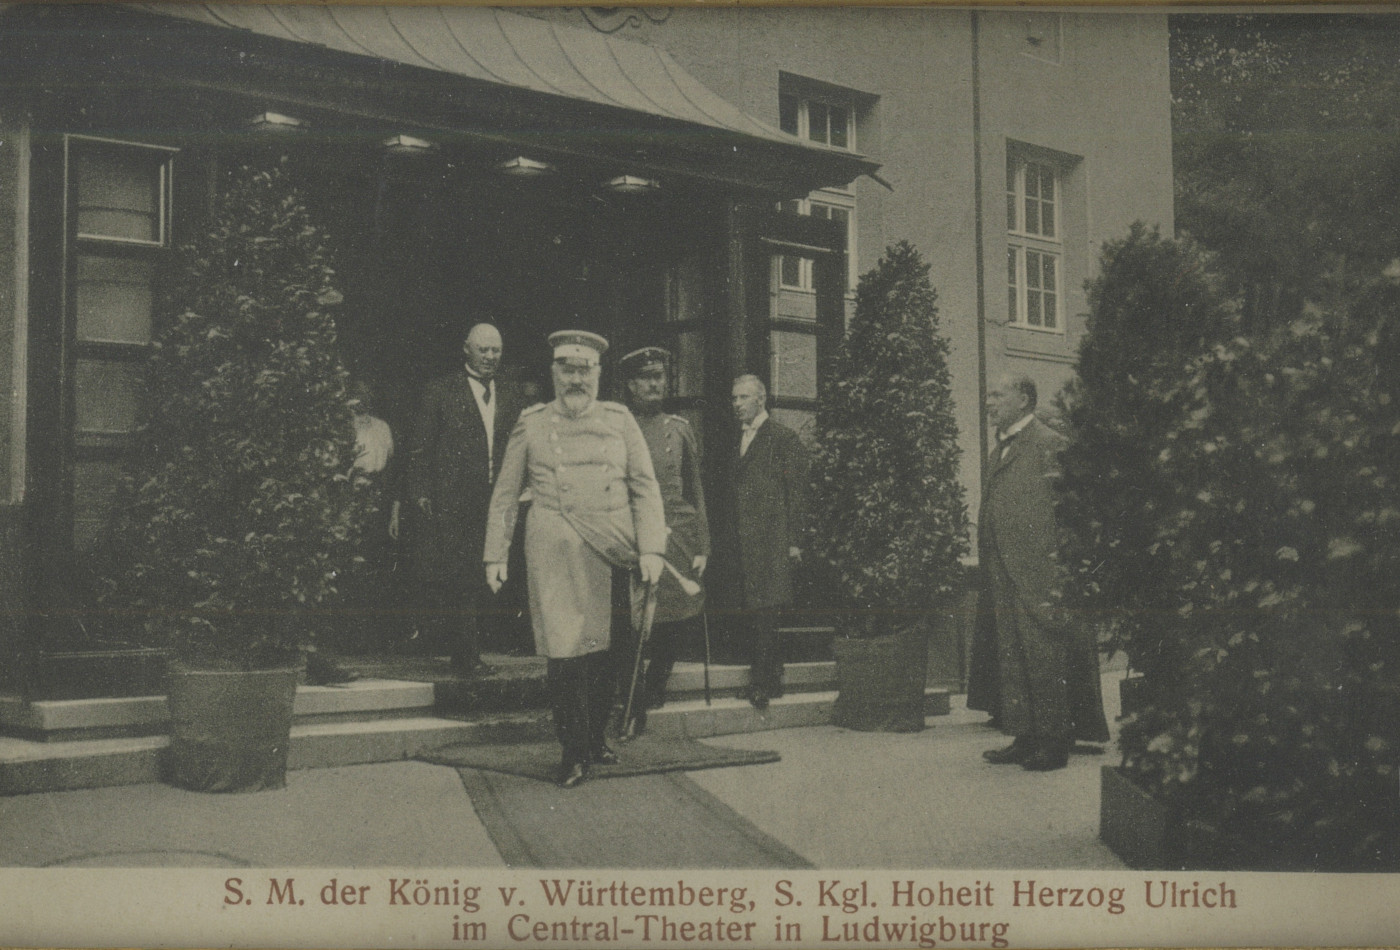 Die Eröffnung des Central kinos 1913 mit dem damaligen König von Württemberg